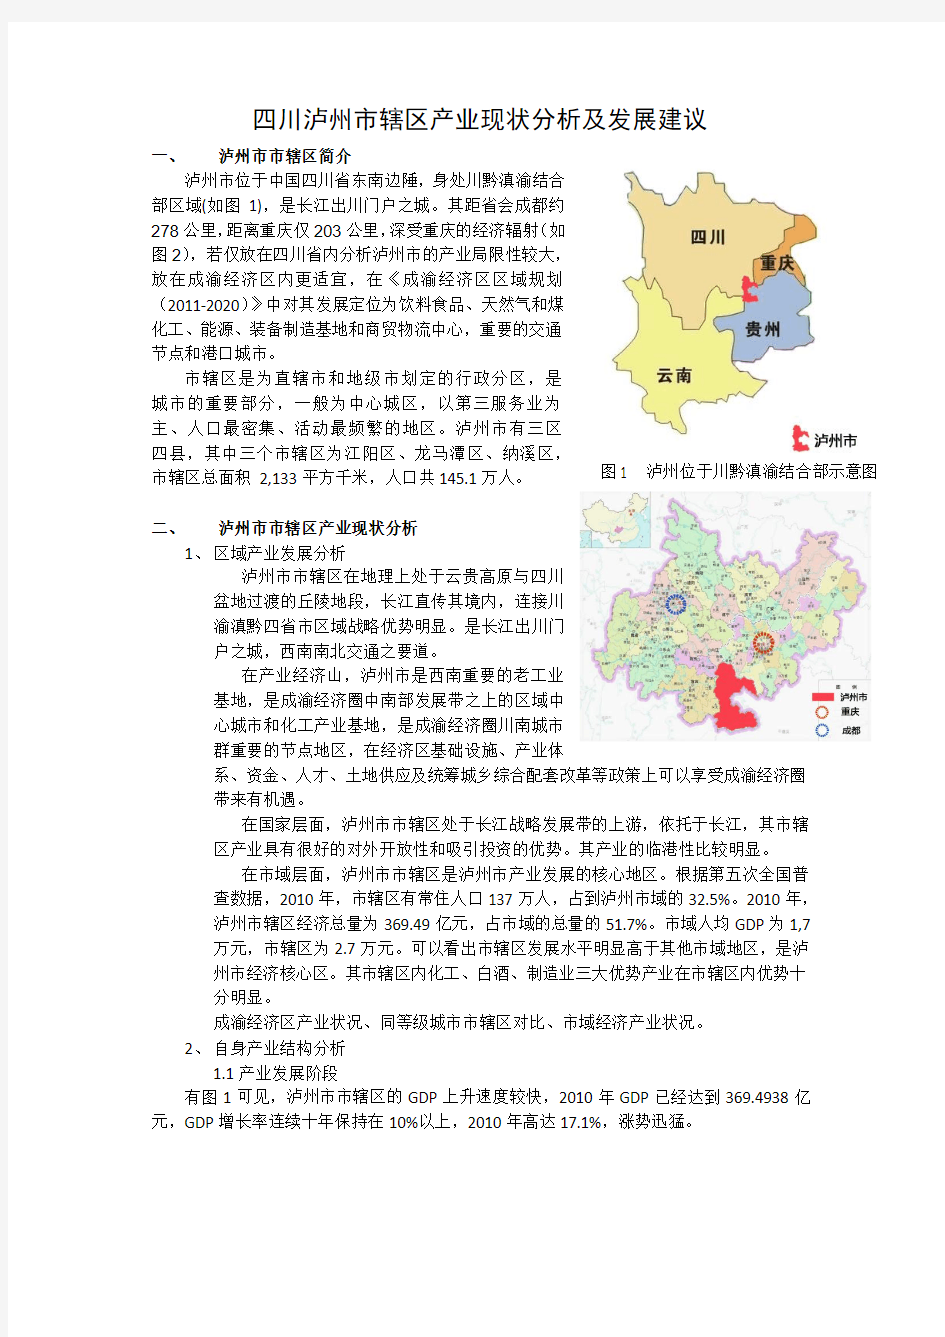 四川省泸州市经济产业现状分析及发展建议 (1)